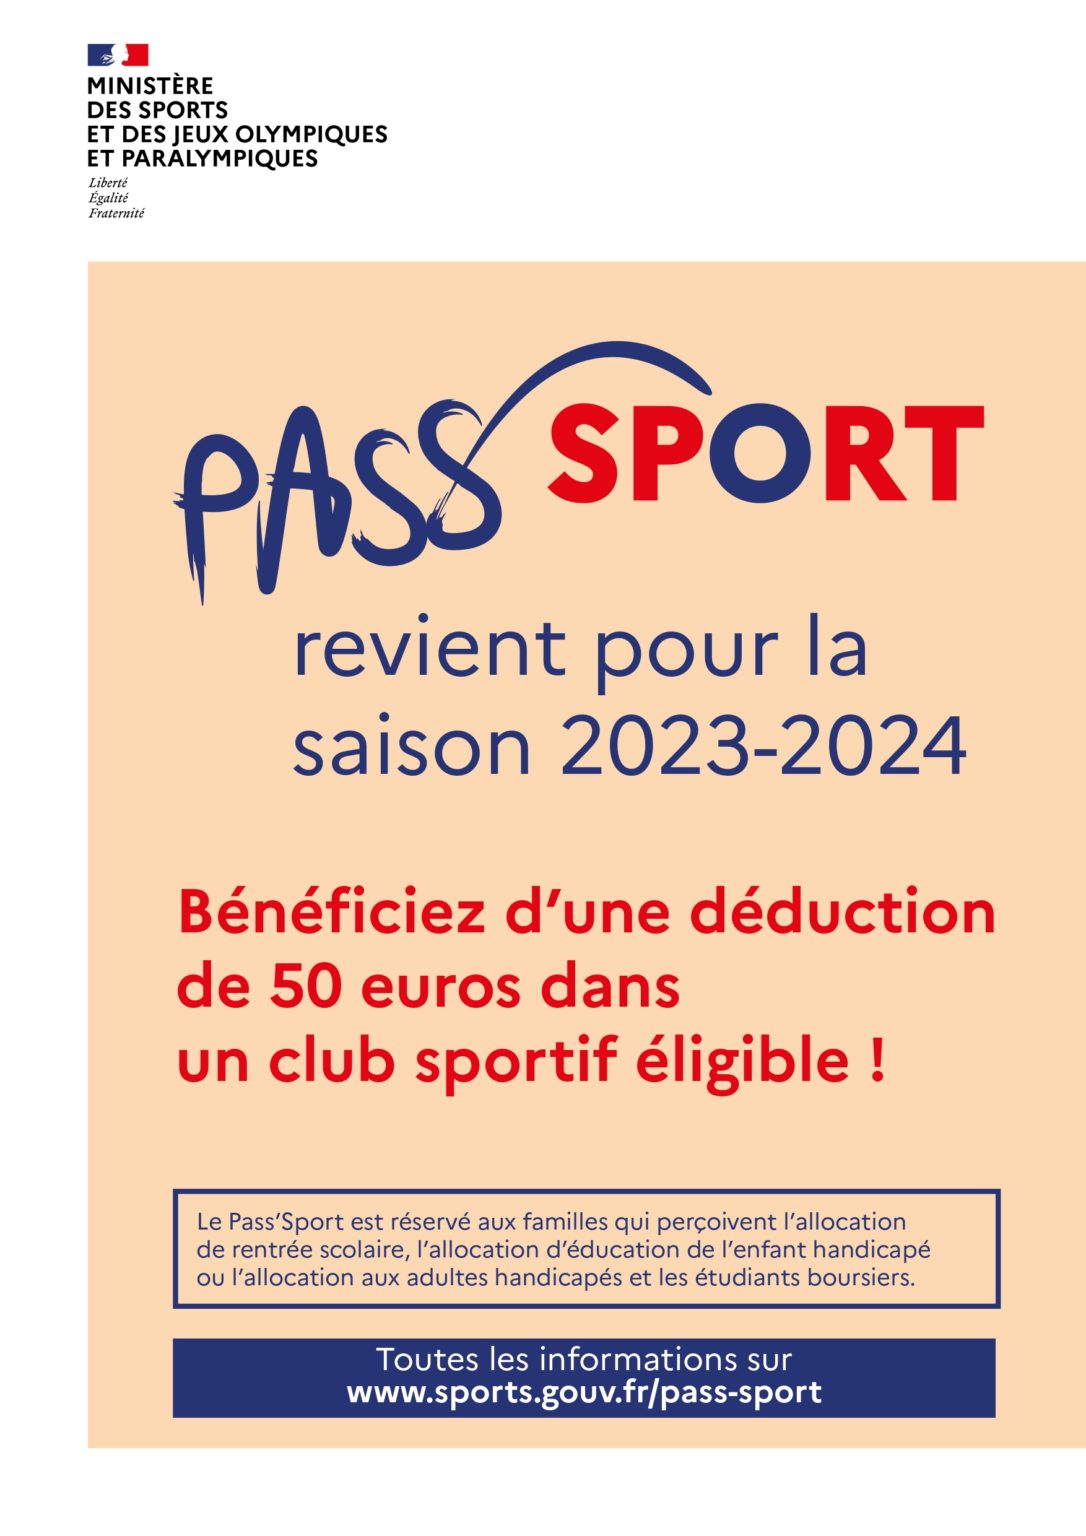 Pass Sport, bénéficiez d’une réduction pour un club sportif